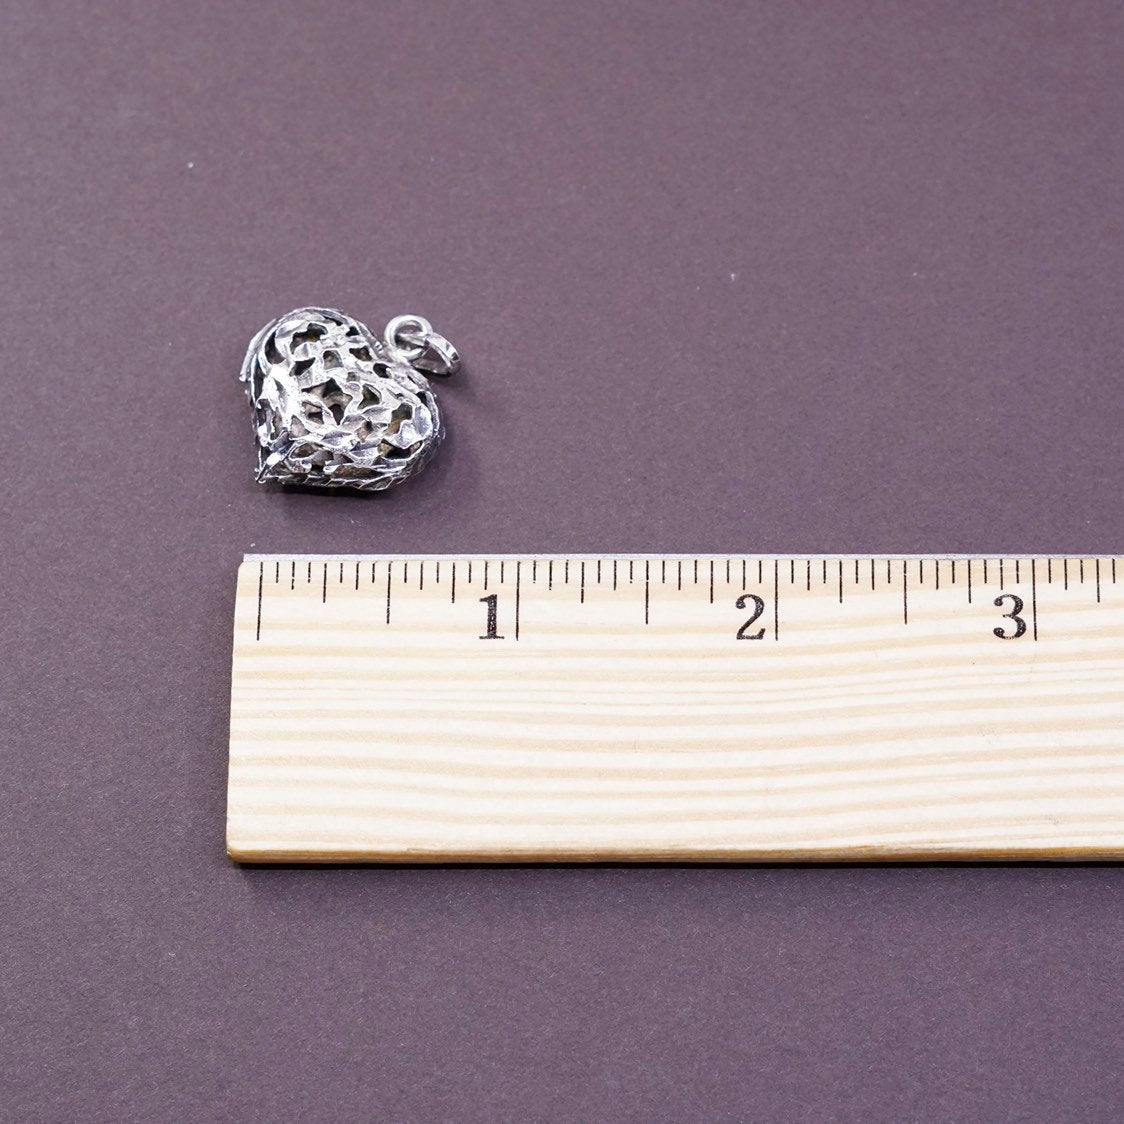 VTG Sterling silver handmade pendant, 925 silver filigree puffy heart pendant